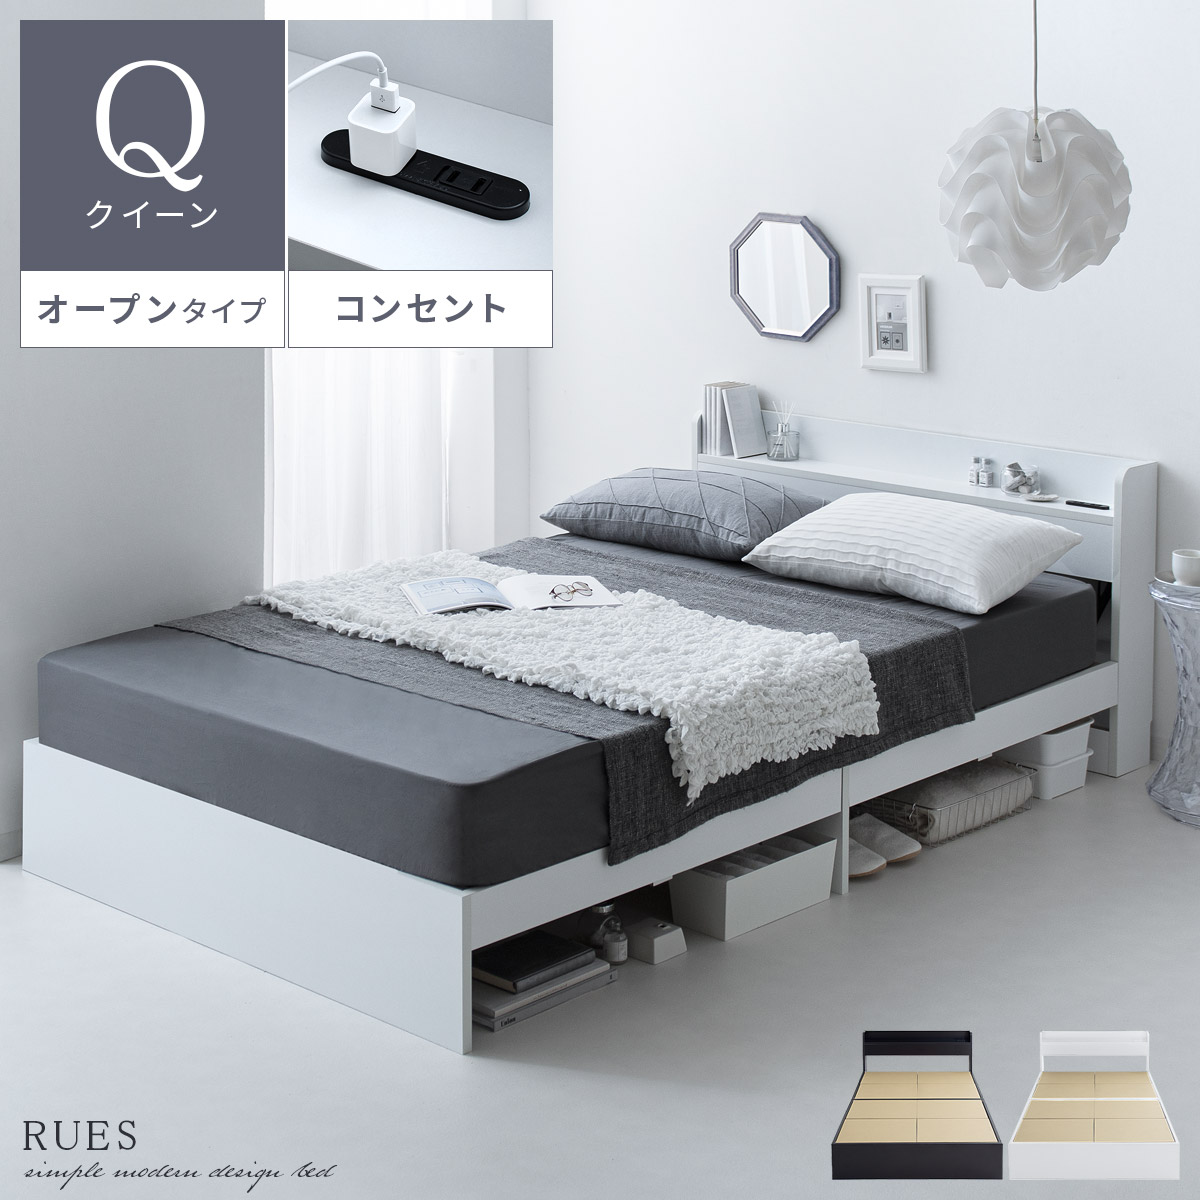 ベッドフレーム RUES(ルース) オープンタイプ フレーム単体販売 クイーンサイズ | 【公式】 エア・リゾーム インテリア・家具通販